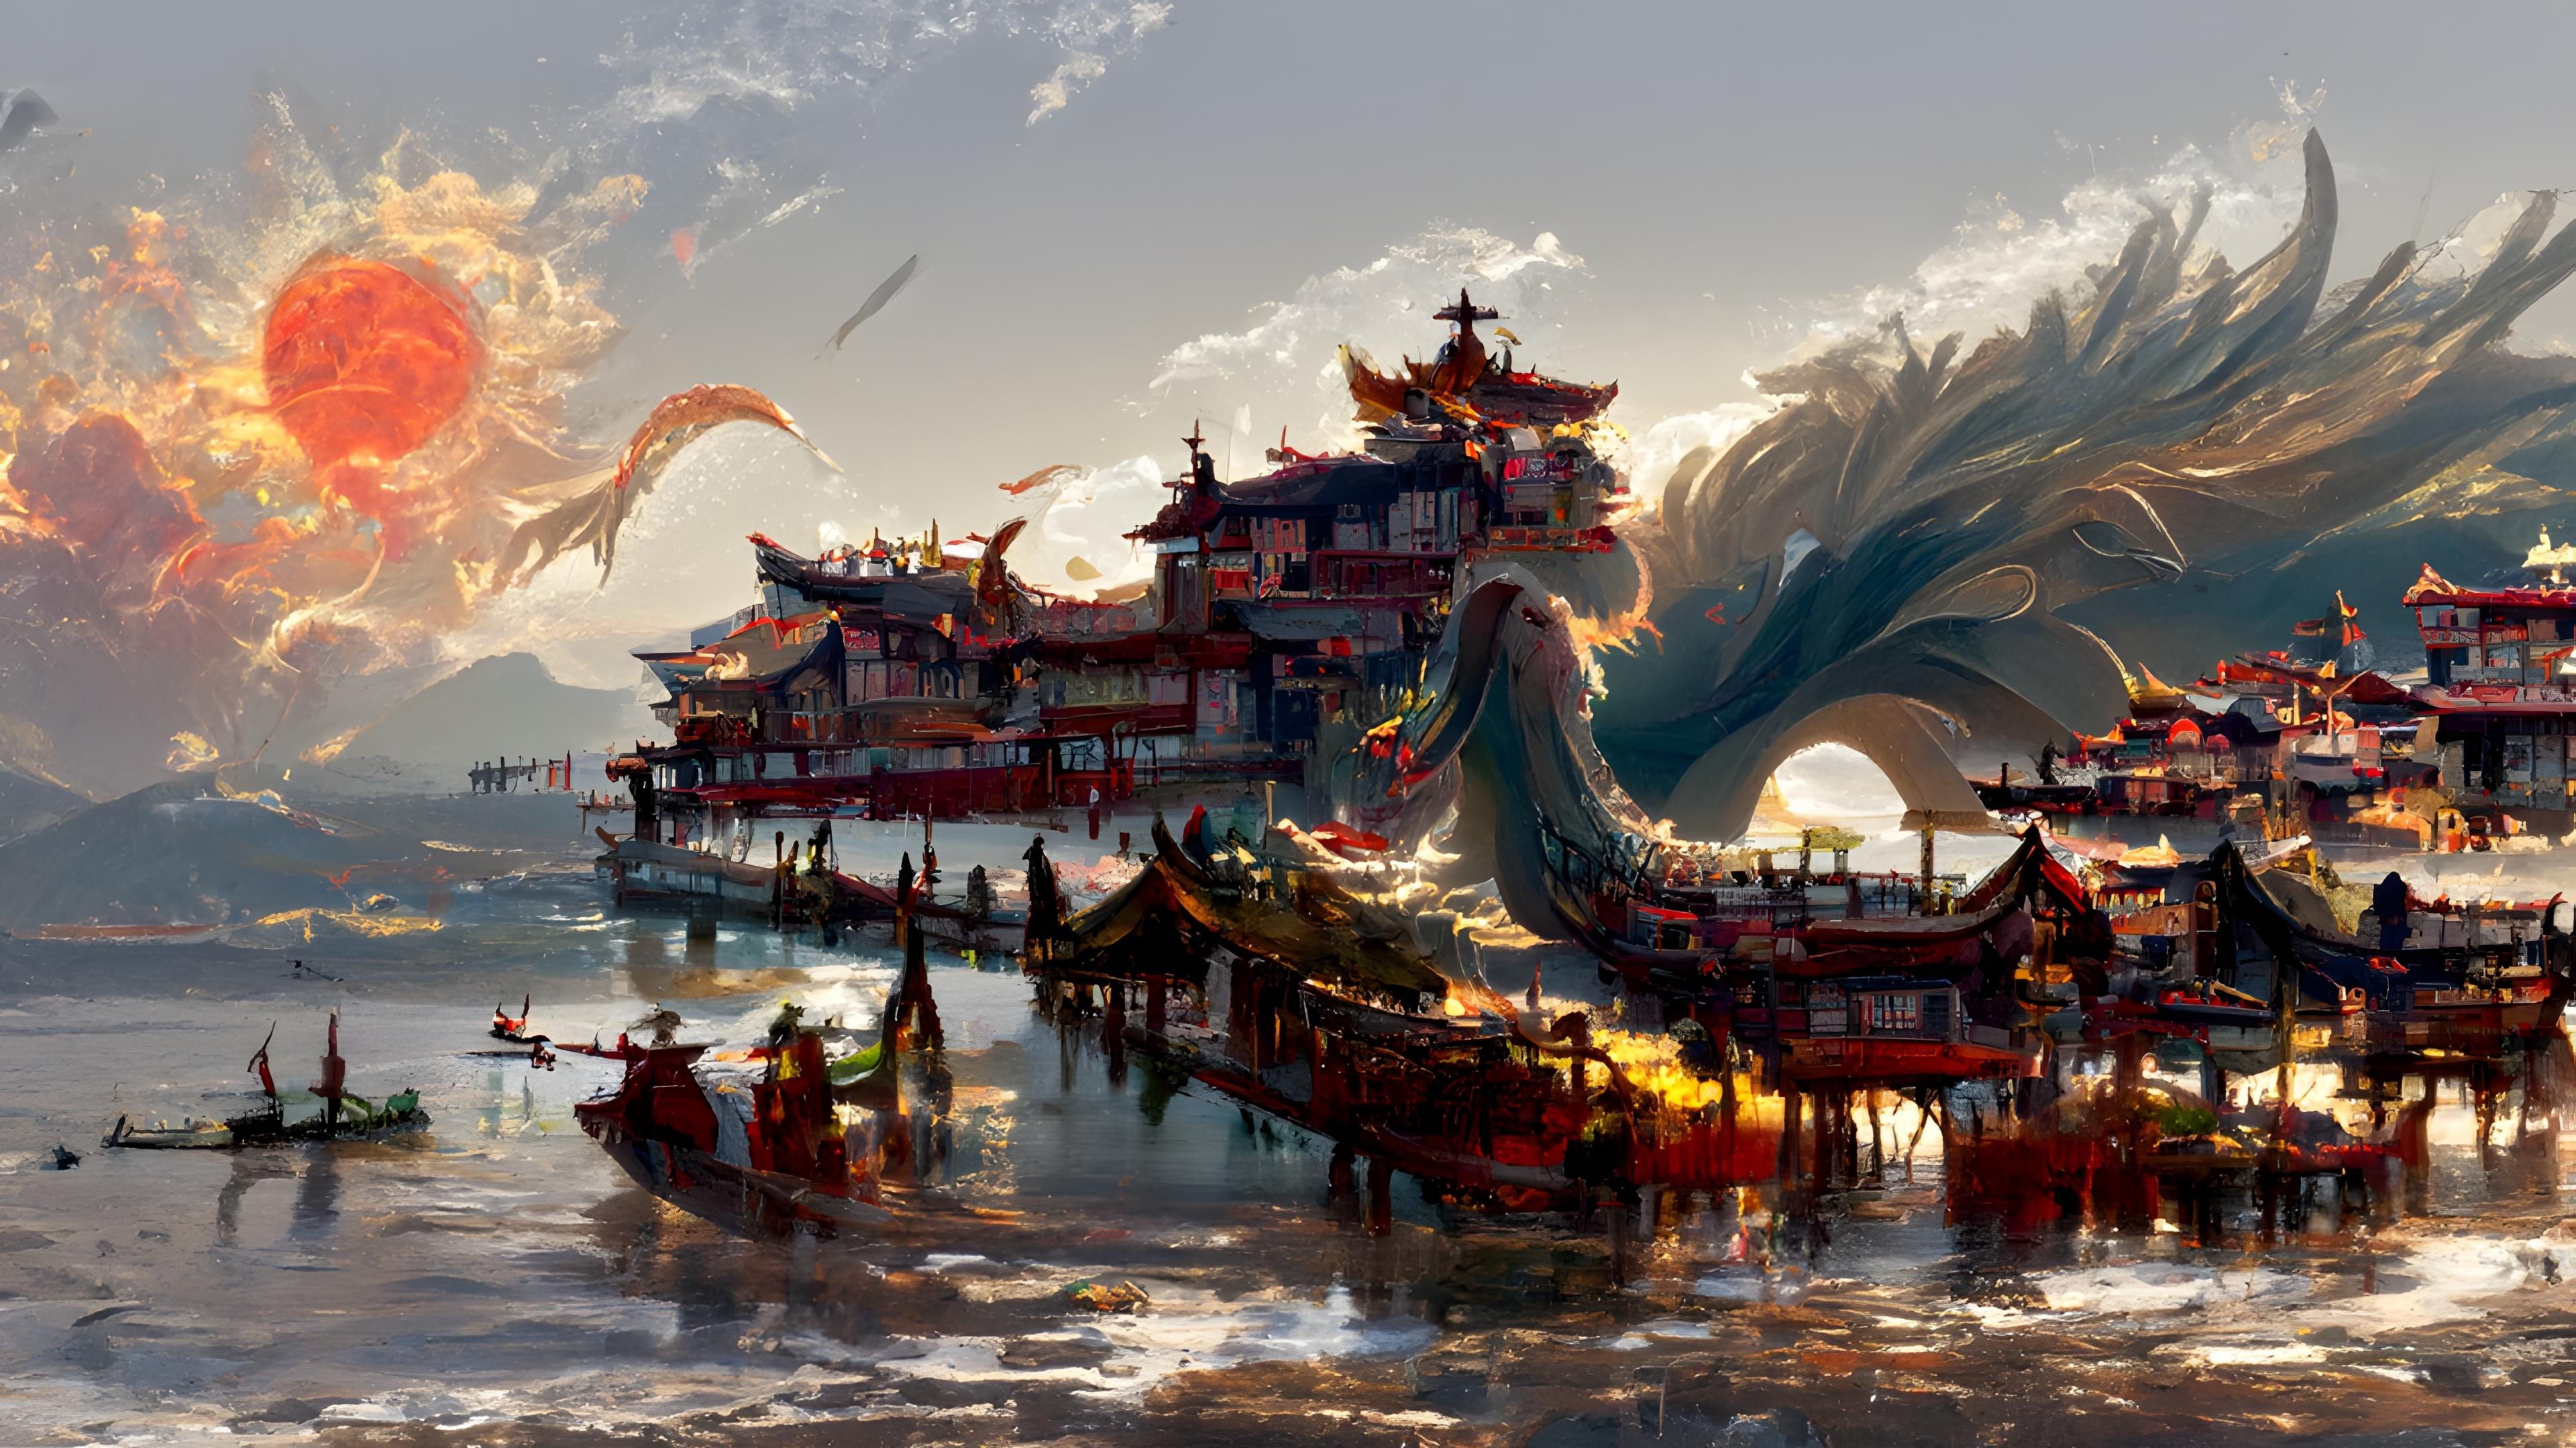 Wallpaper China S Ancient Town Dragon Fantasy